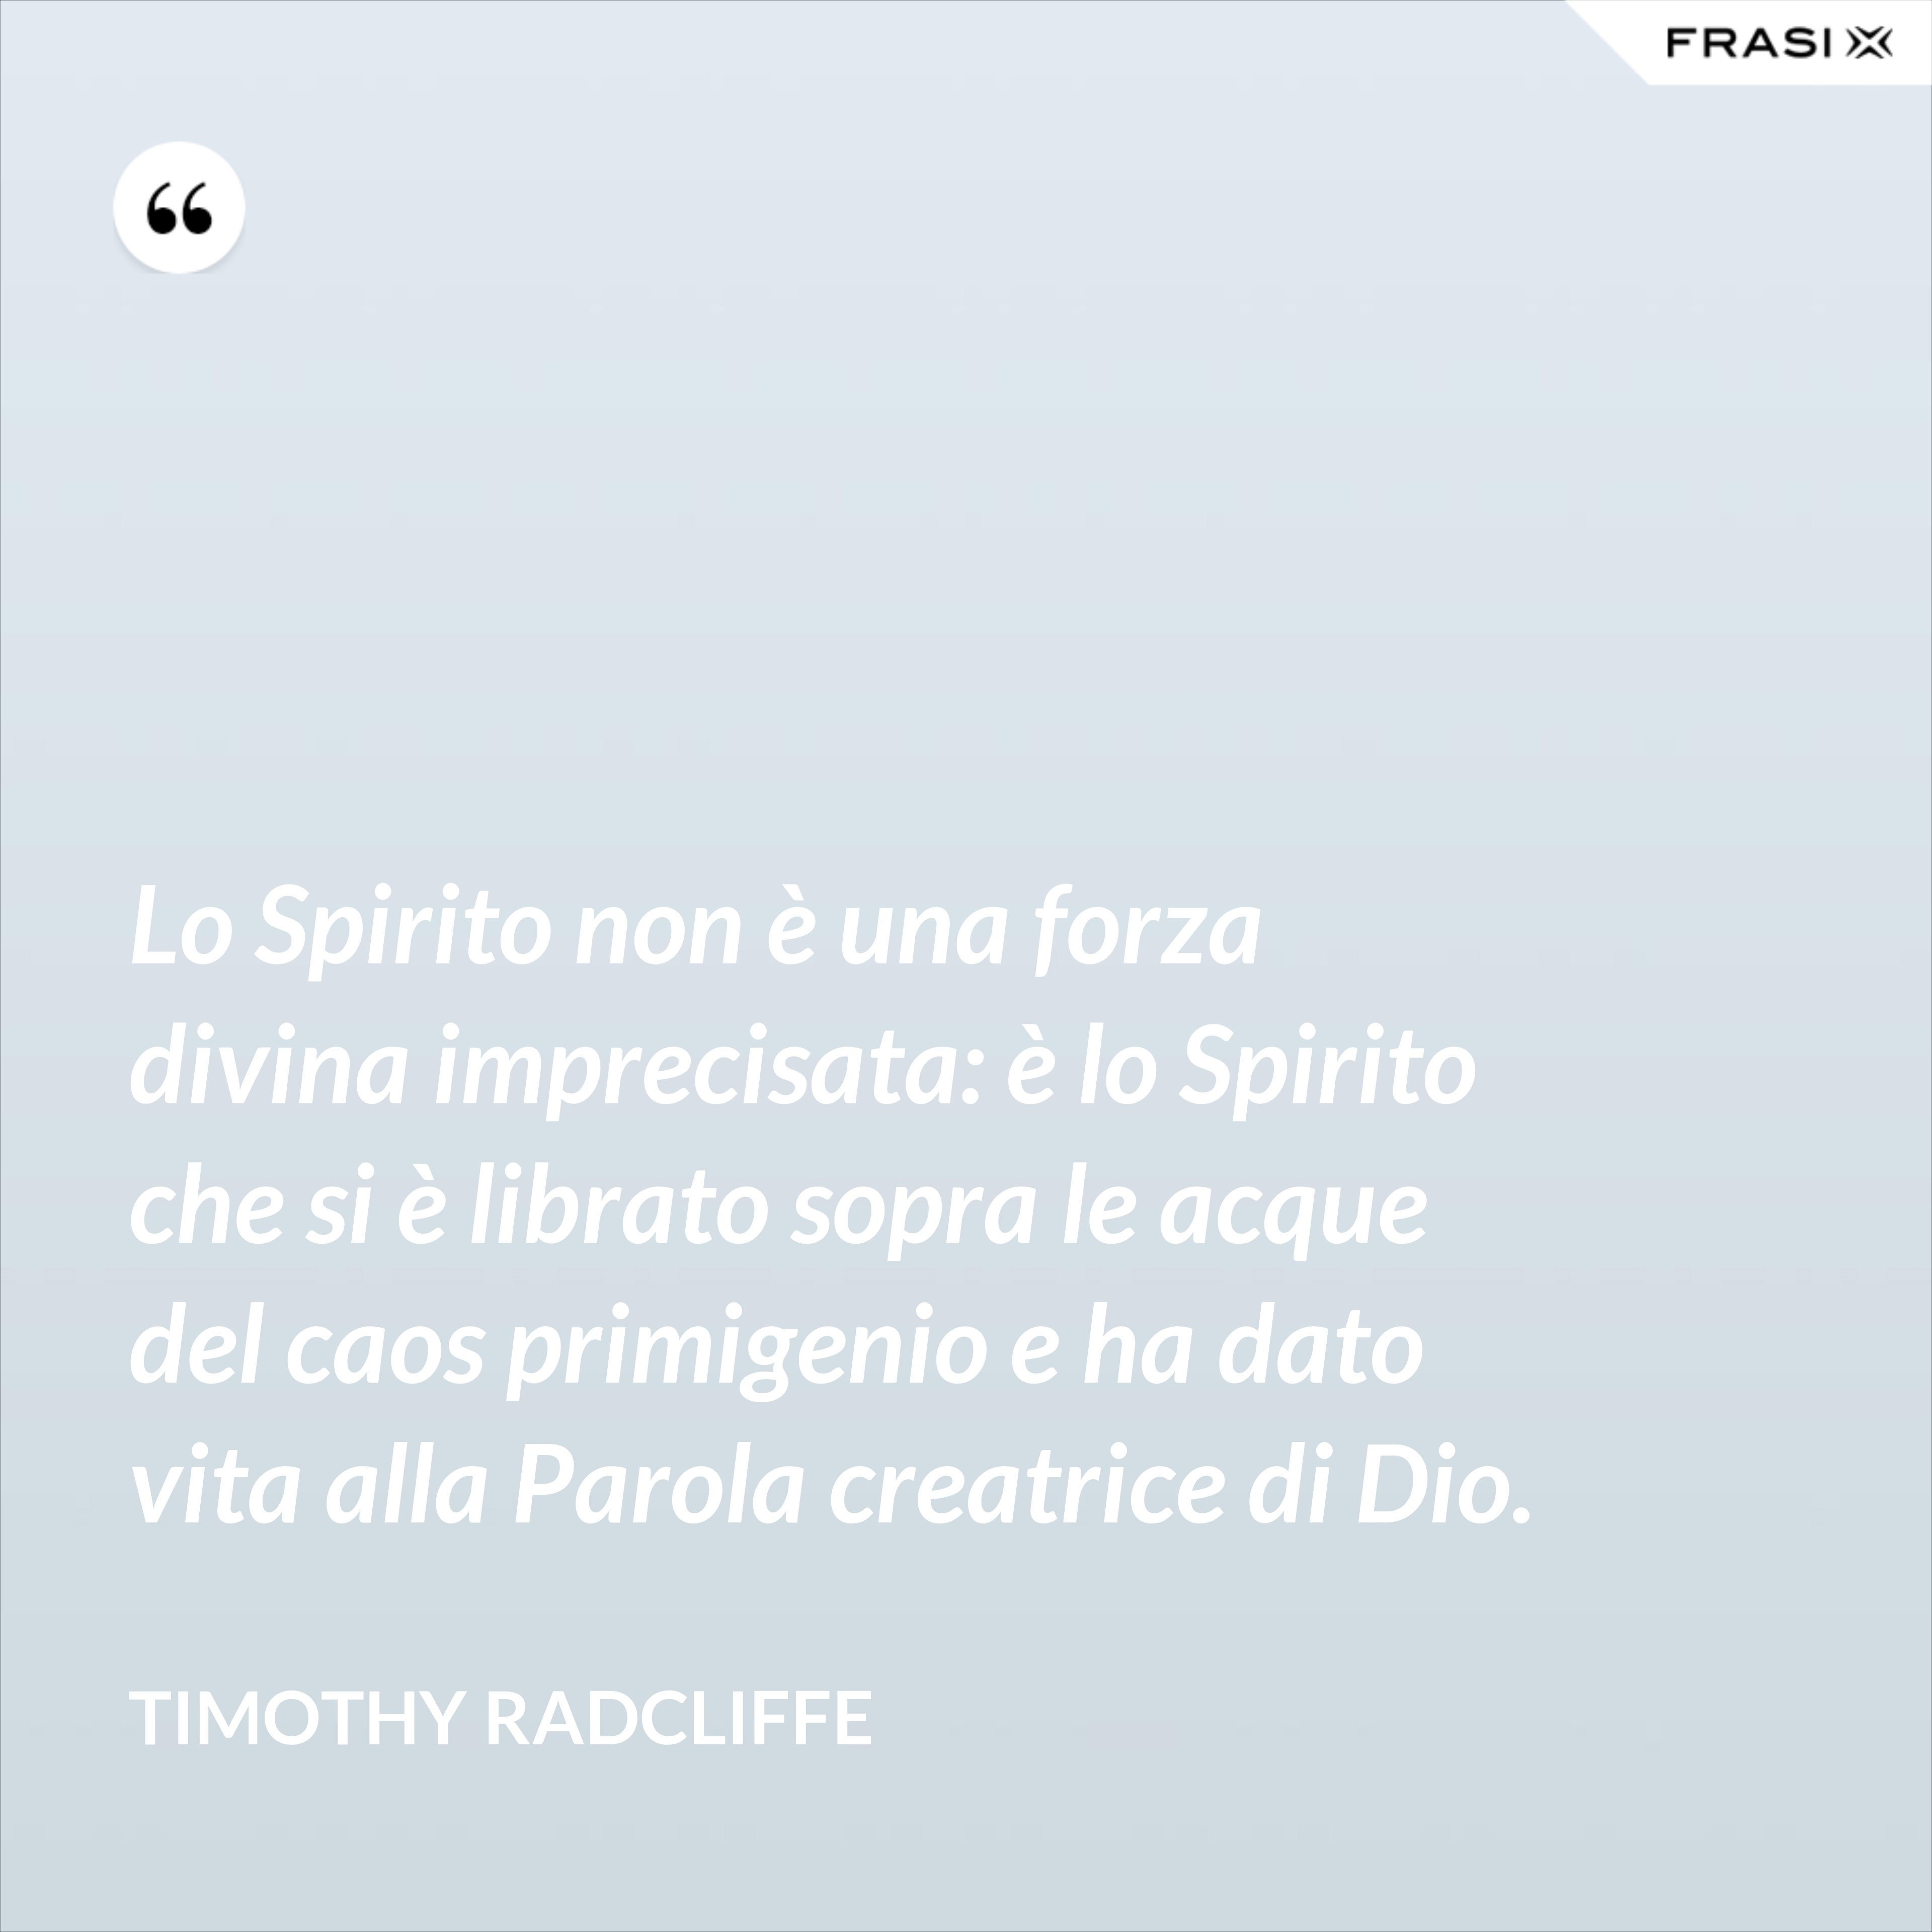 Lo Spirito non è una forza divina imprecisata: è lo Spirito che si è librato sopra le acque del caos primigenio e ha dato vita alla Parola creatrice di Dio. - Timothy Radcliffe